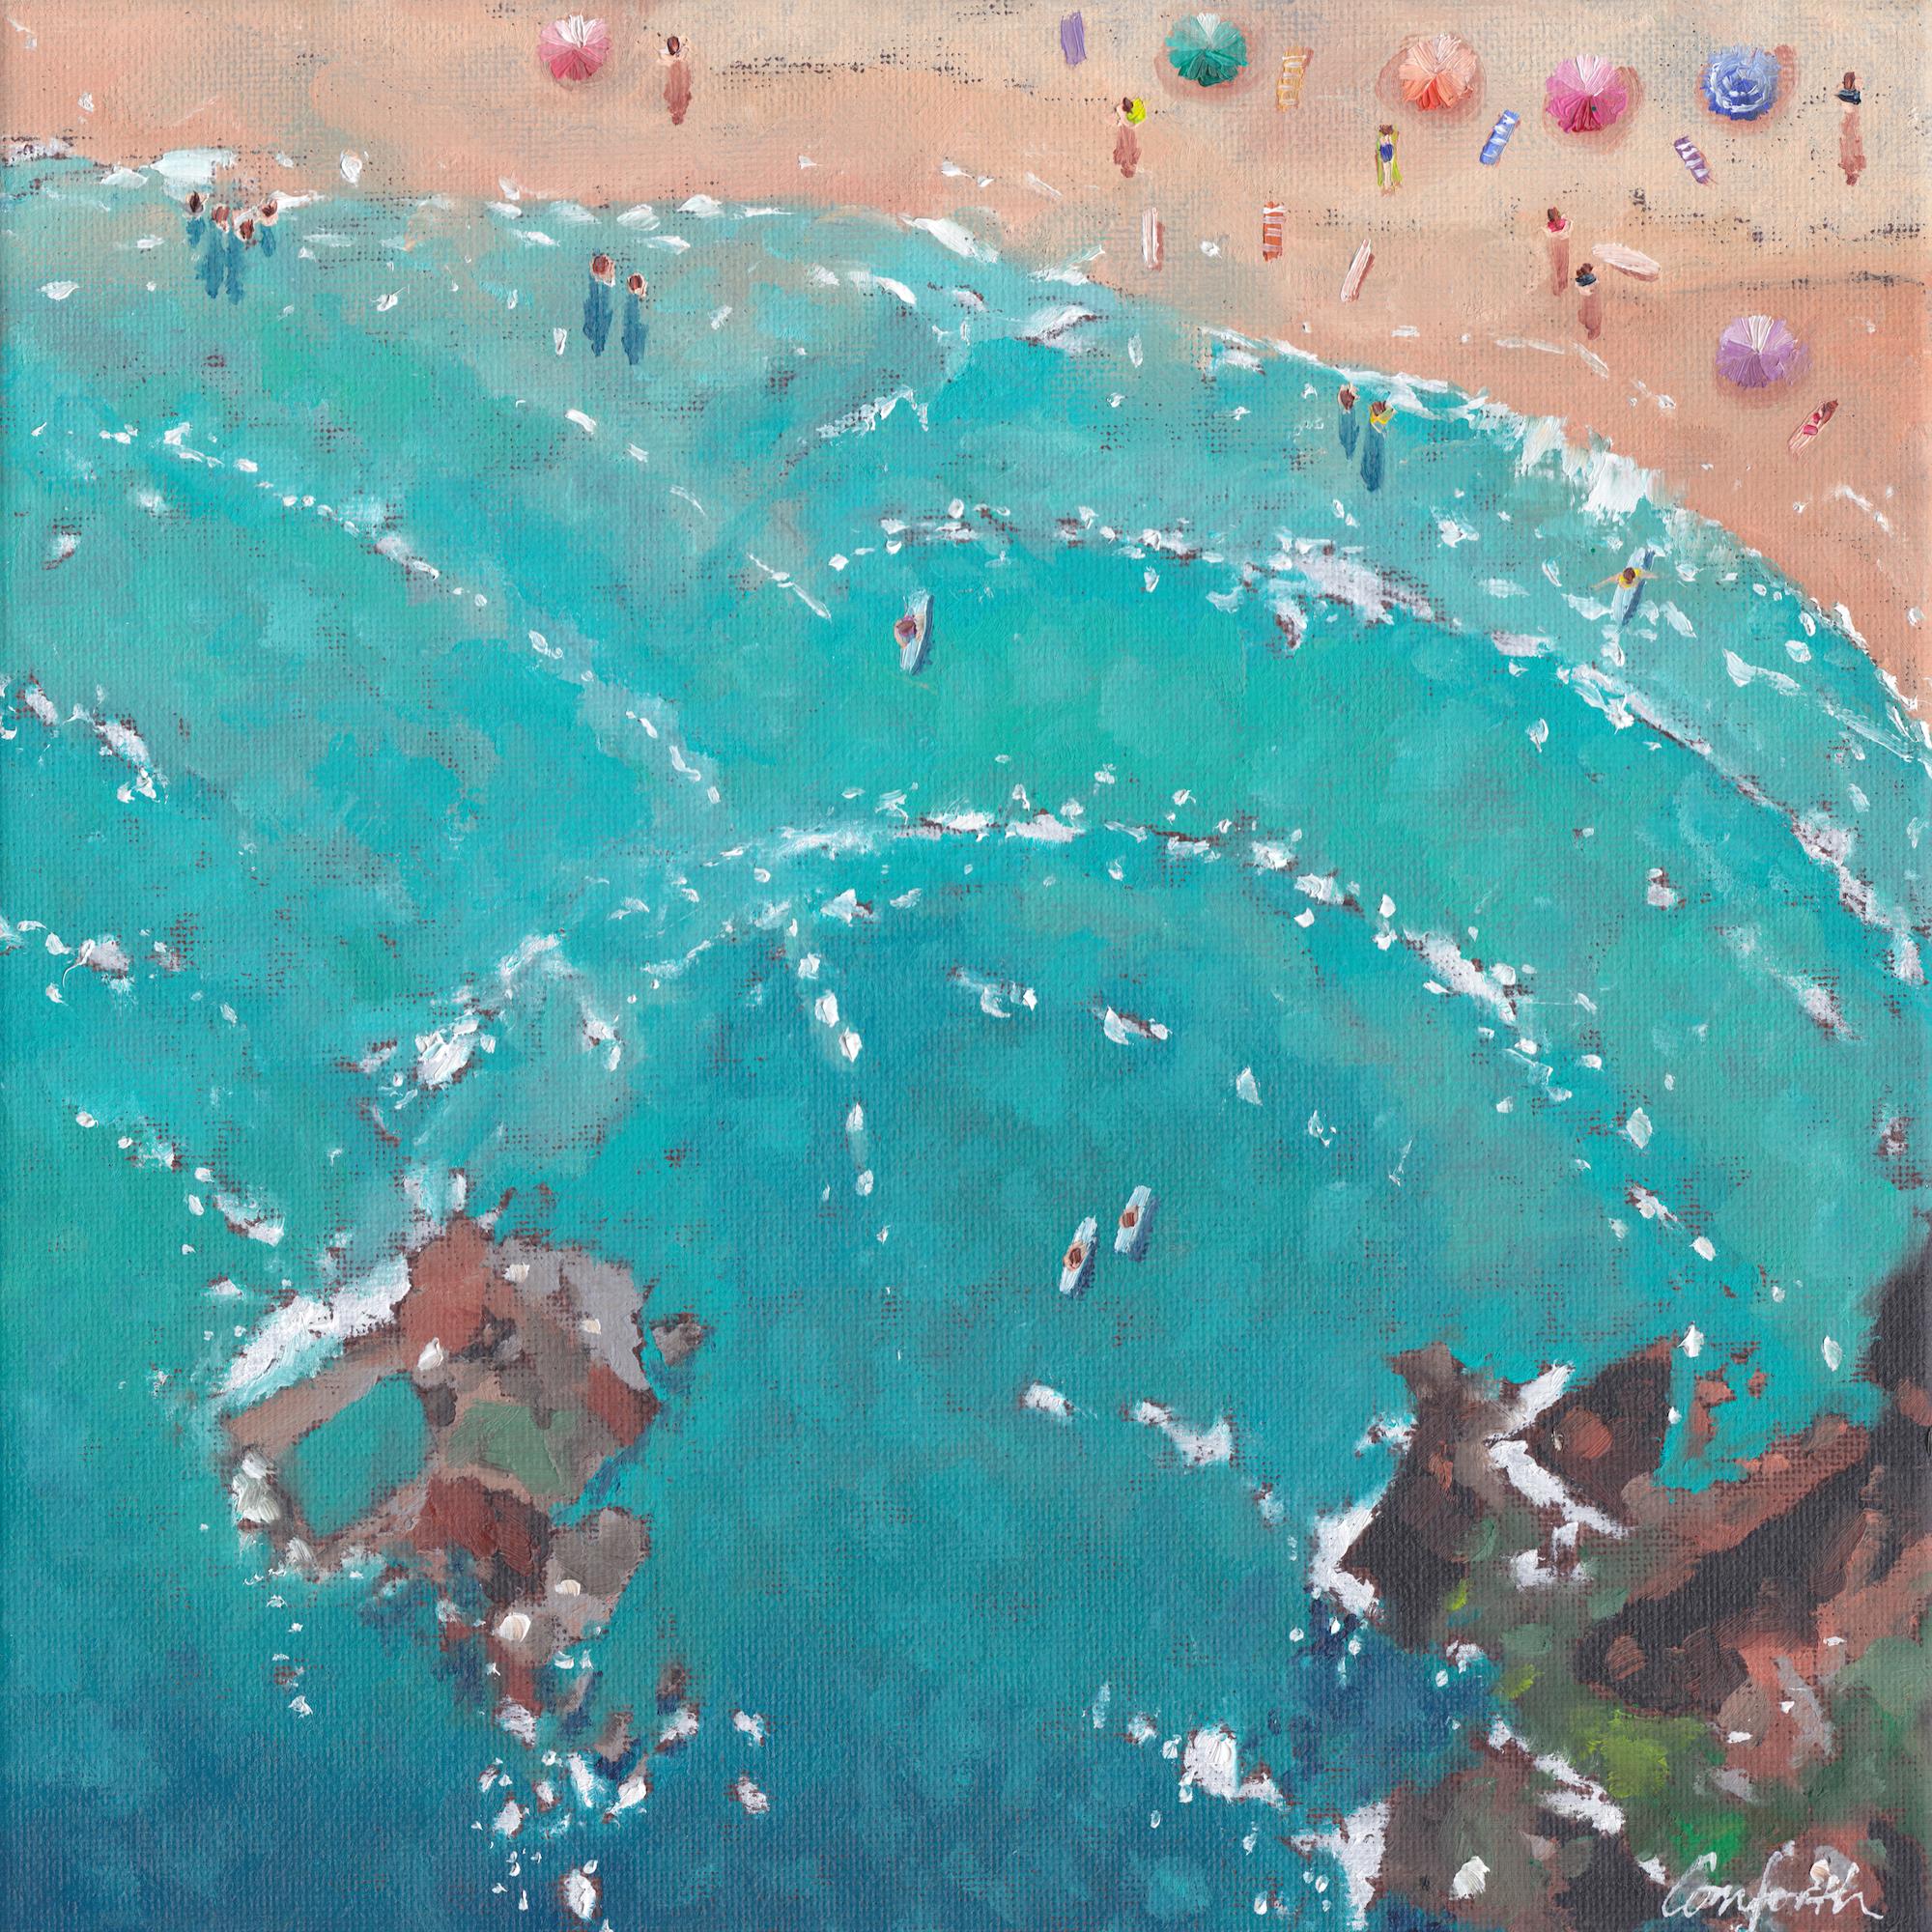 Perranporth-CONTEMPORÄRE Impressionismus Cornish Meereslandschaft Malerei-Original Kunst